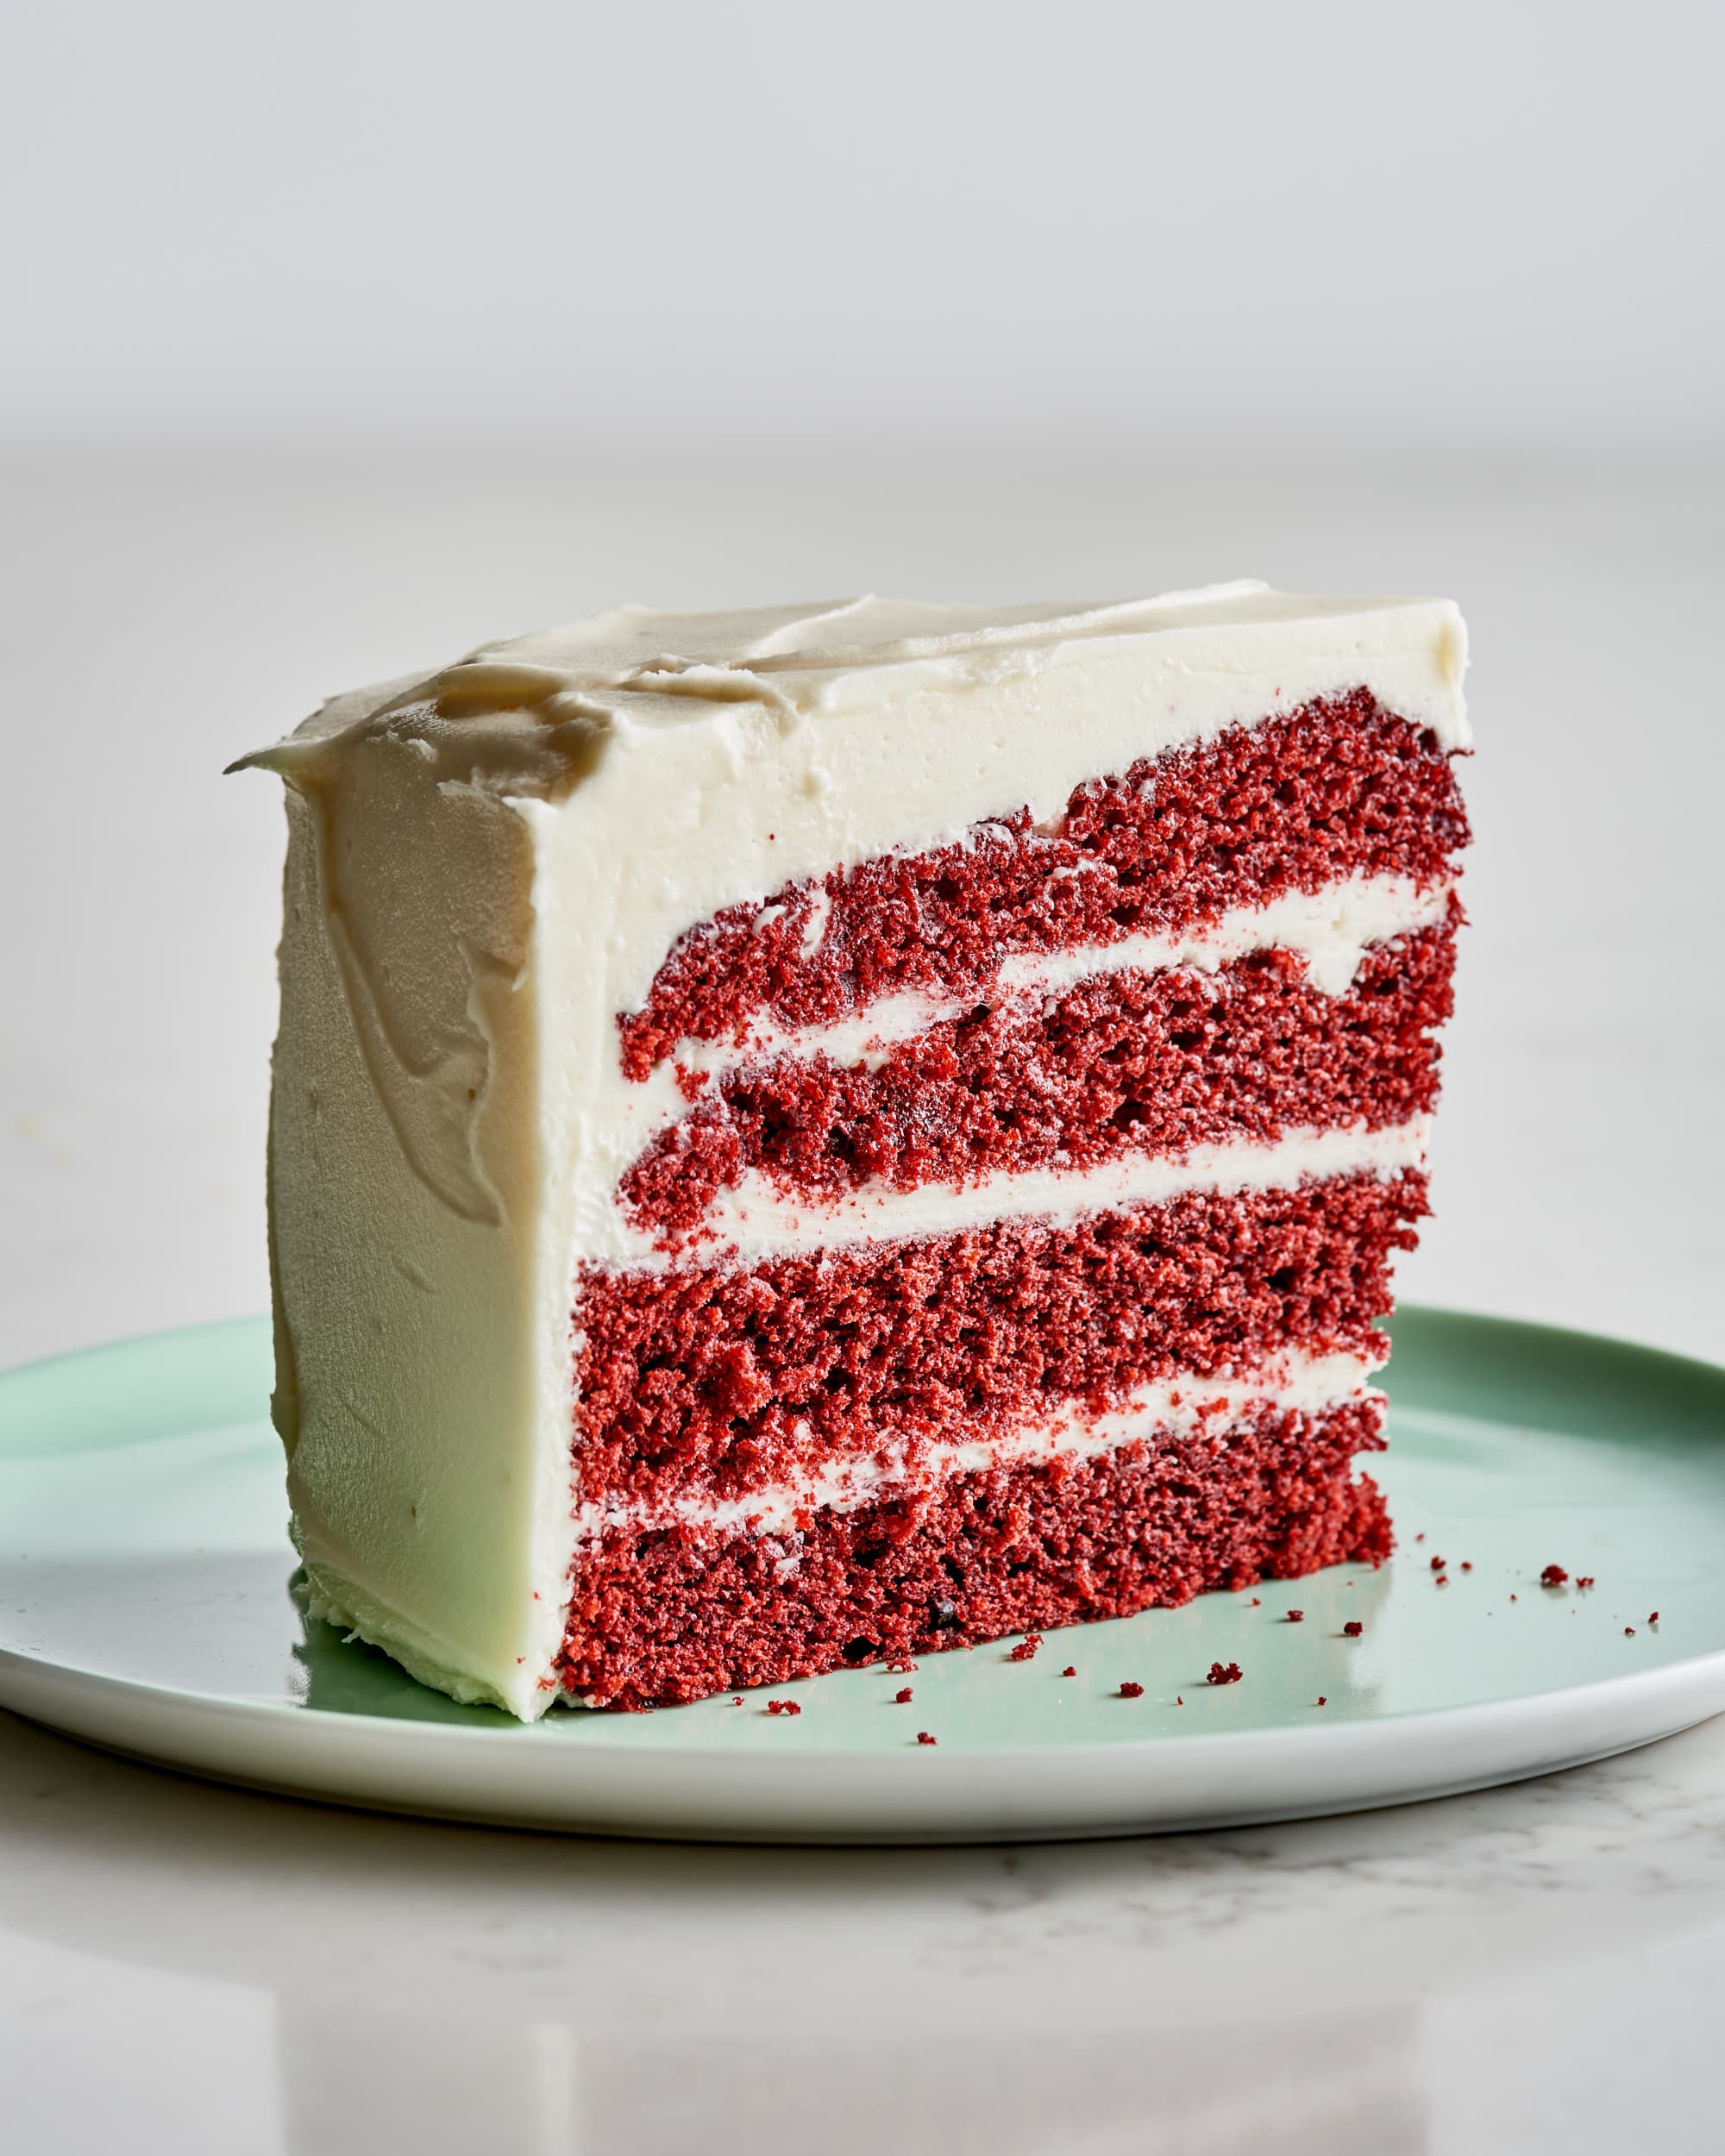 https://cdn.apartmenttherapy.info/image/upload/v1642797289/k/Photo/Series/2022-01_Recipe-Showdown_Red-Velvet-Cake/2022-01_Recipe-Showdown_Red-Velvet-Cake_King-Arthur-2022-01-20_ATK0067.jpg